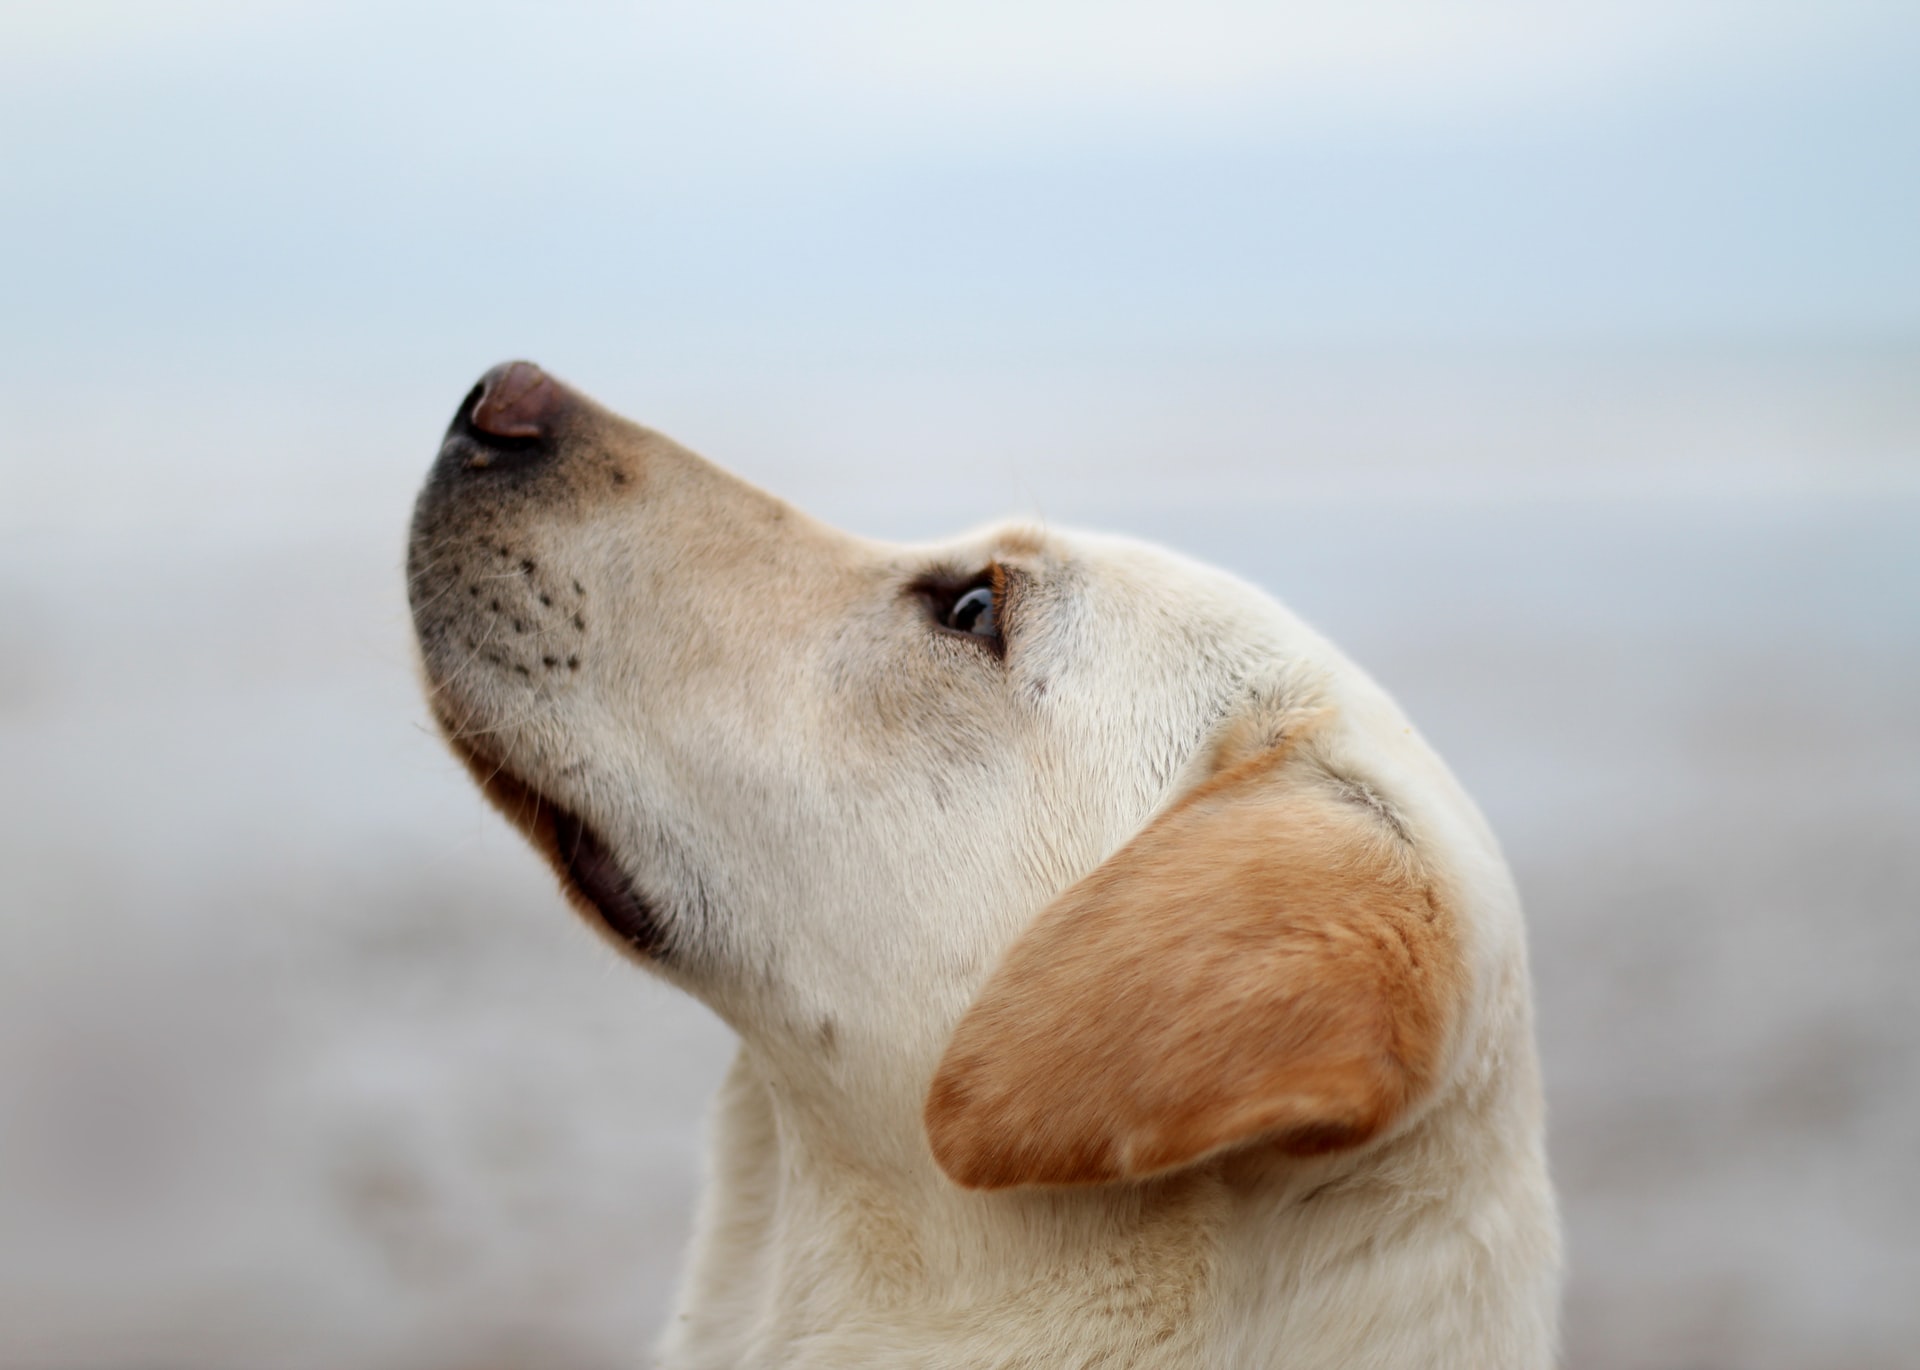 A Bölcs Orr betanított kutyái másodpercek alatt diagnosztizálhatják a Covid-19 fertőzést. Ingyen